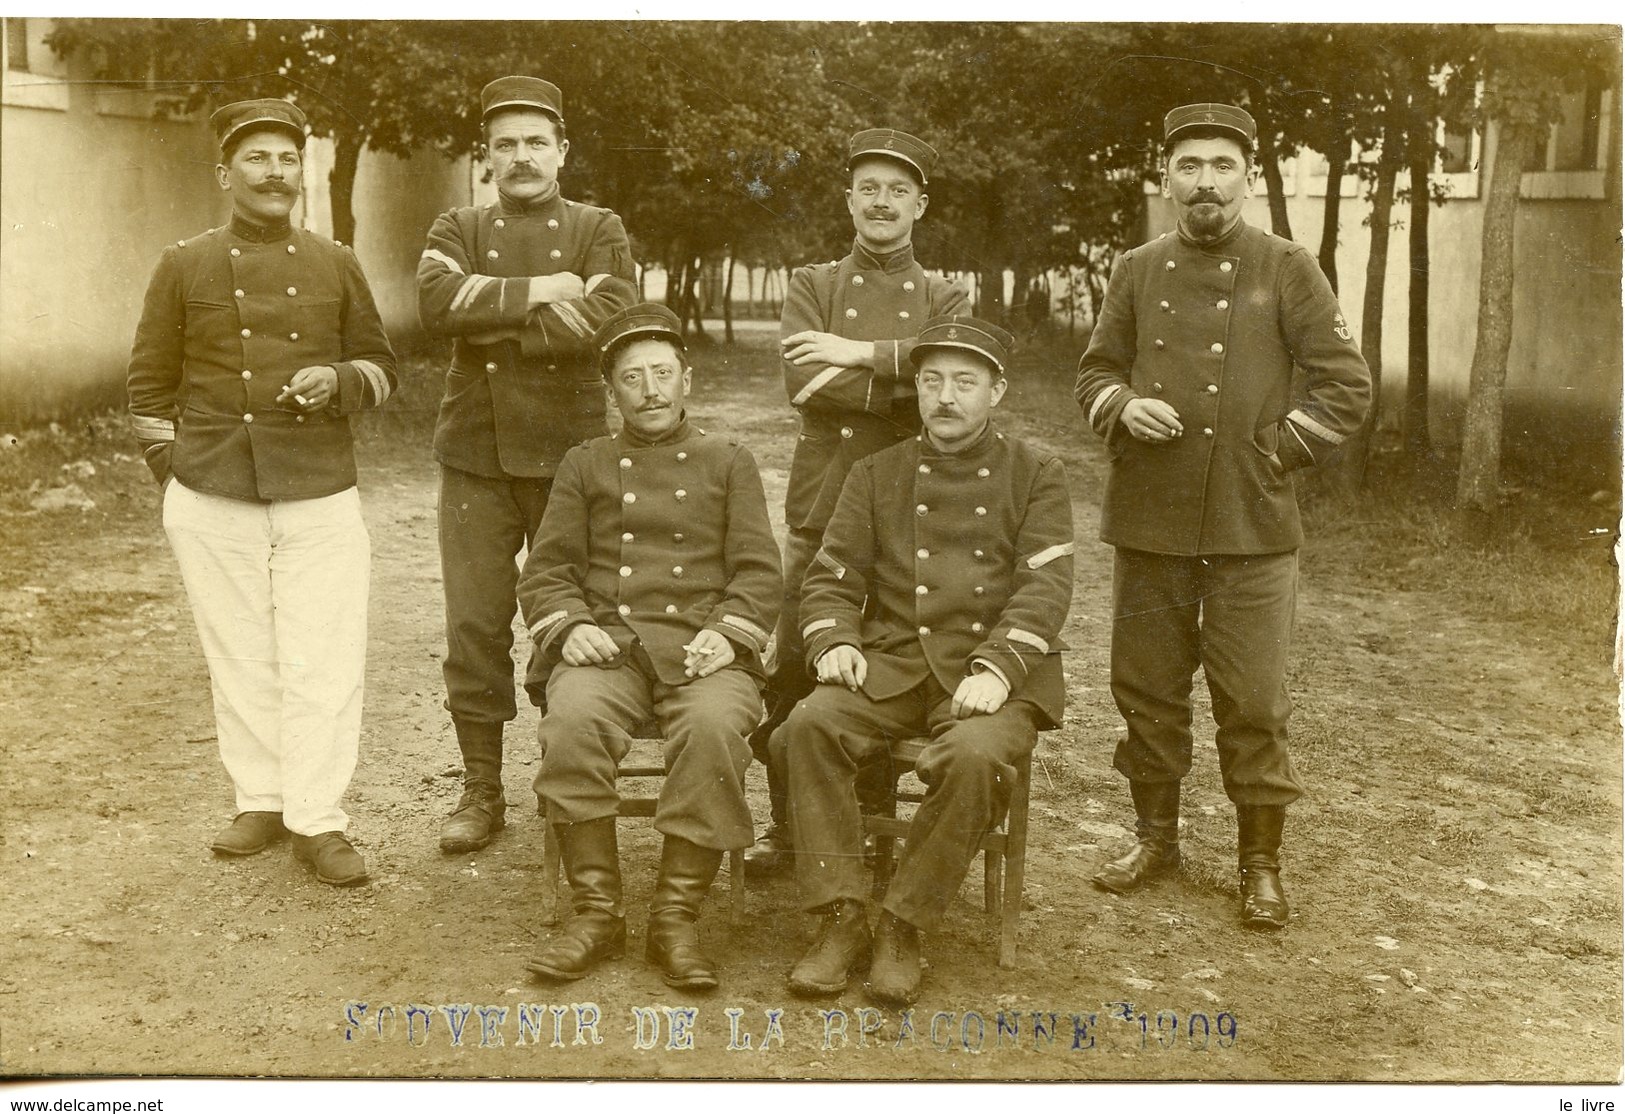 CHARENTE 16. CPA PHOTO GROUPE MILITAIRES TROUPES DE MARINE. SOUVENIR DE LA BRACONNE 1909